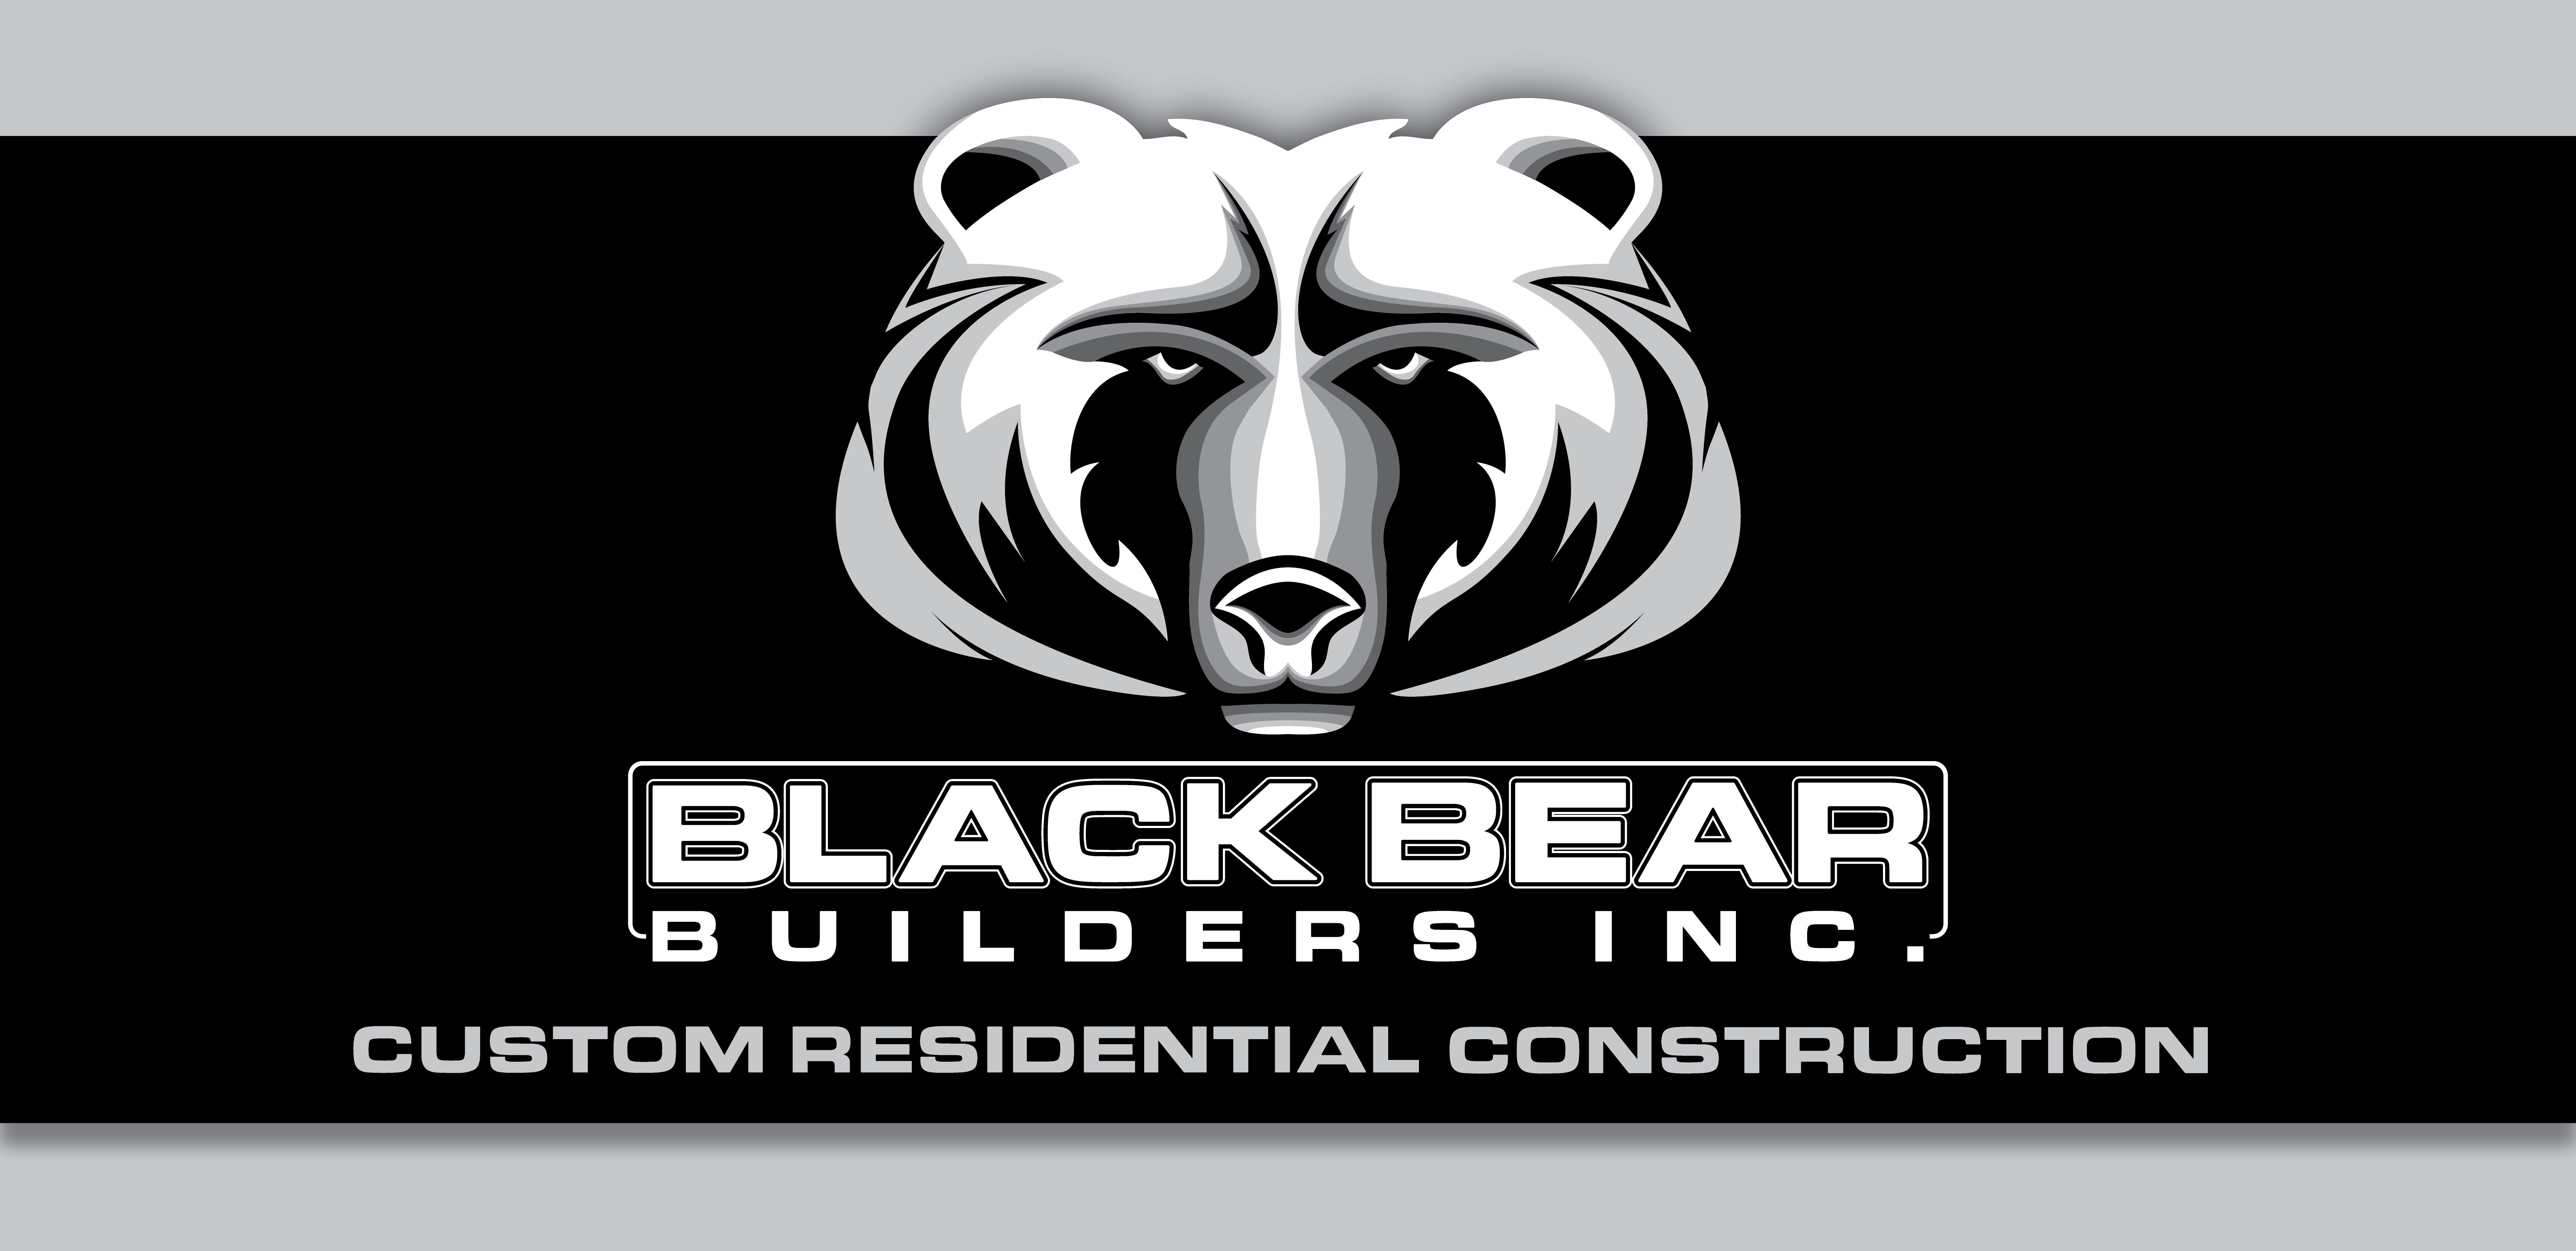 Black Bear Builders